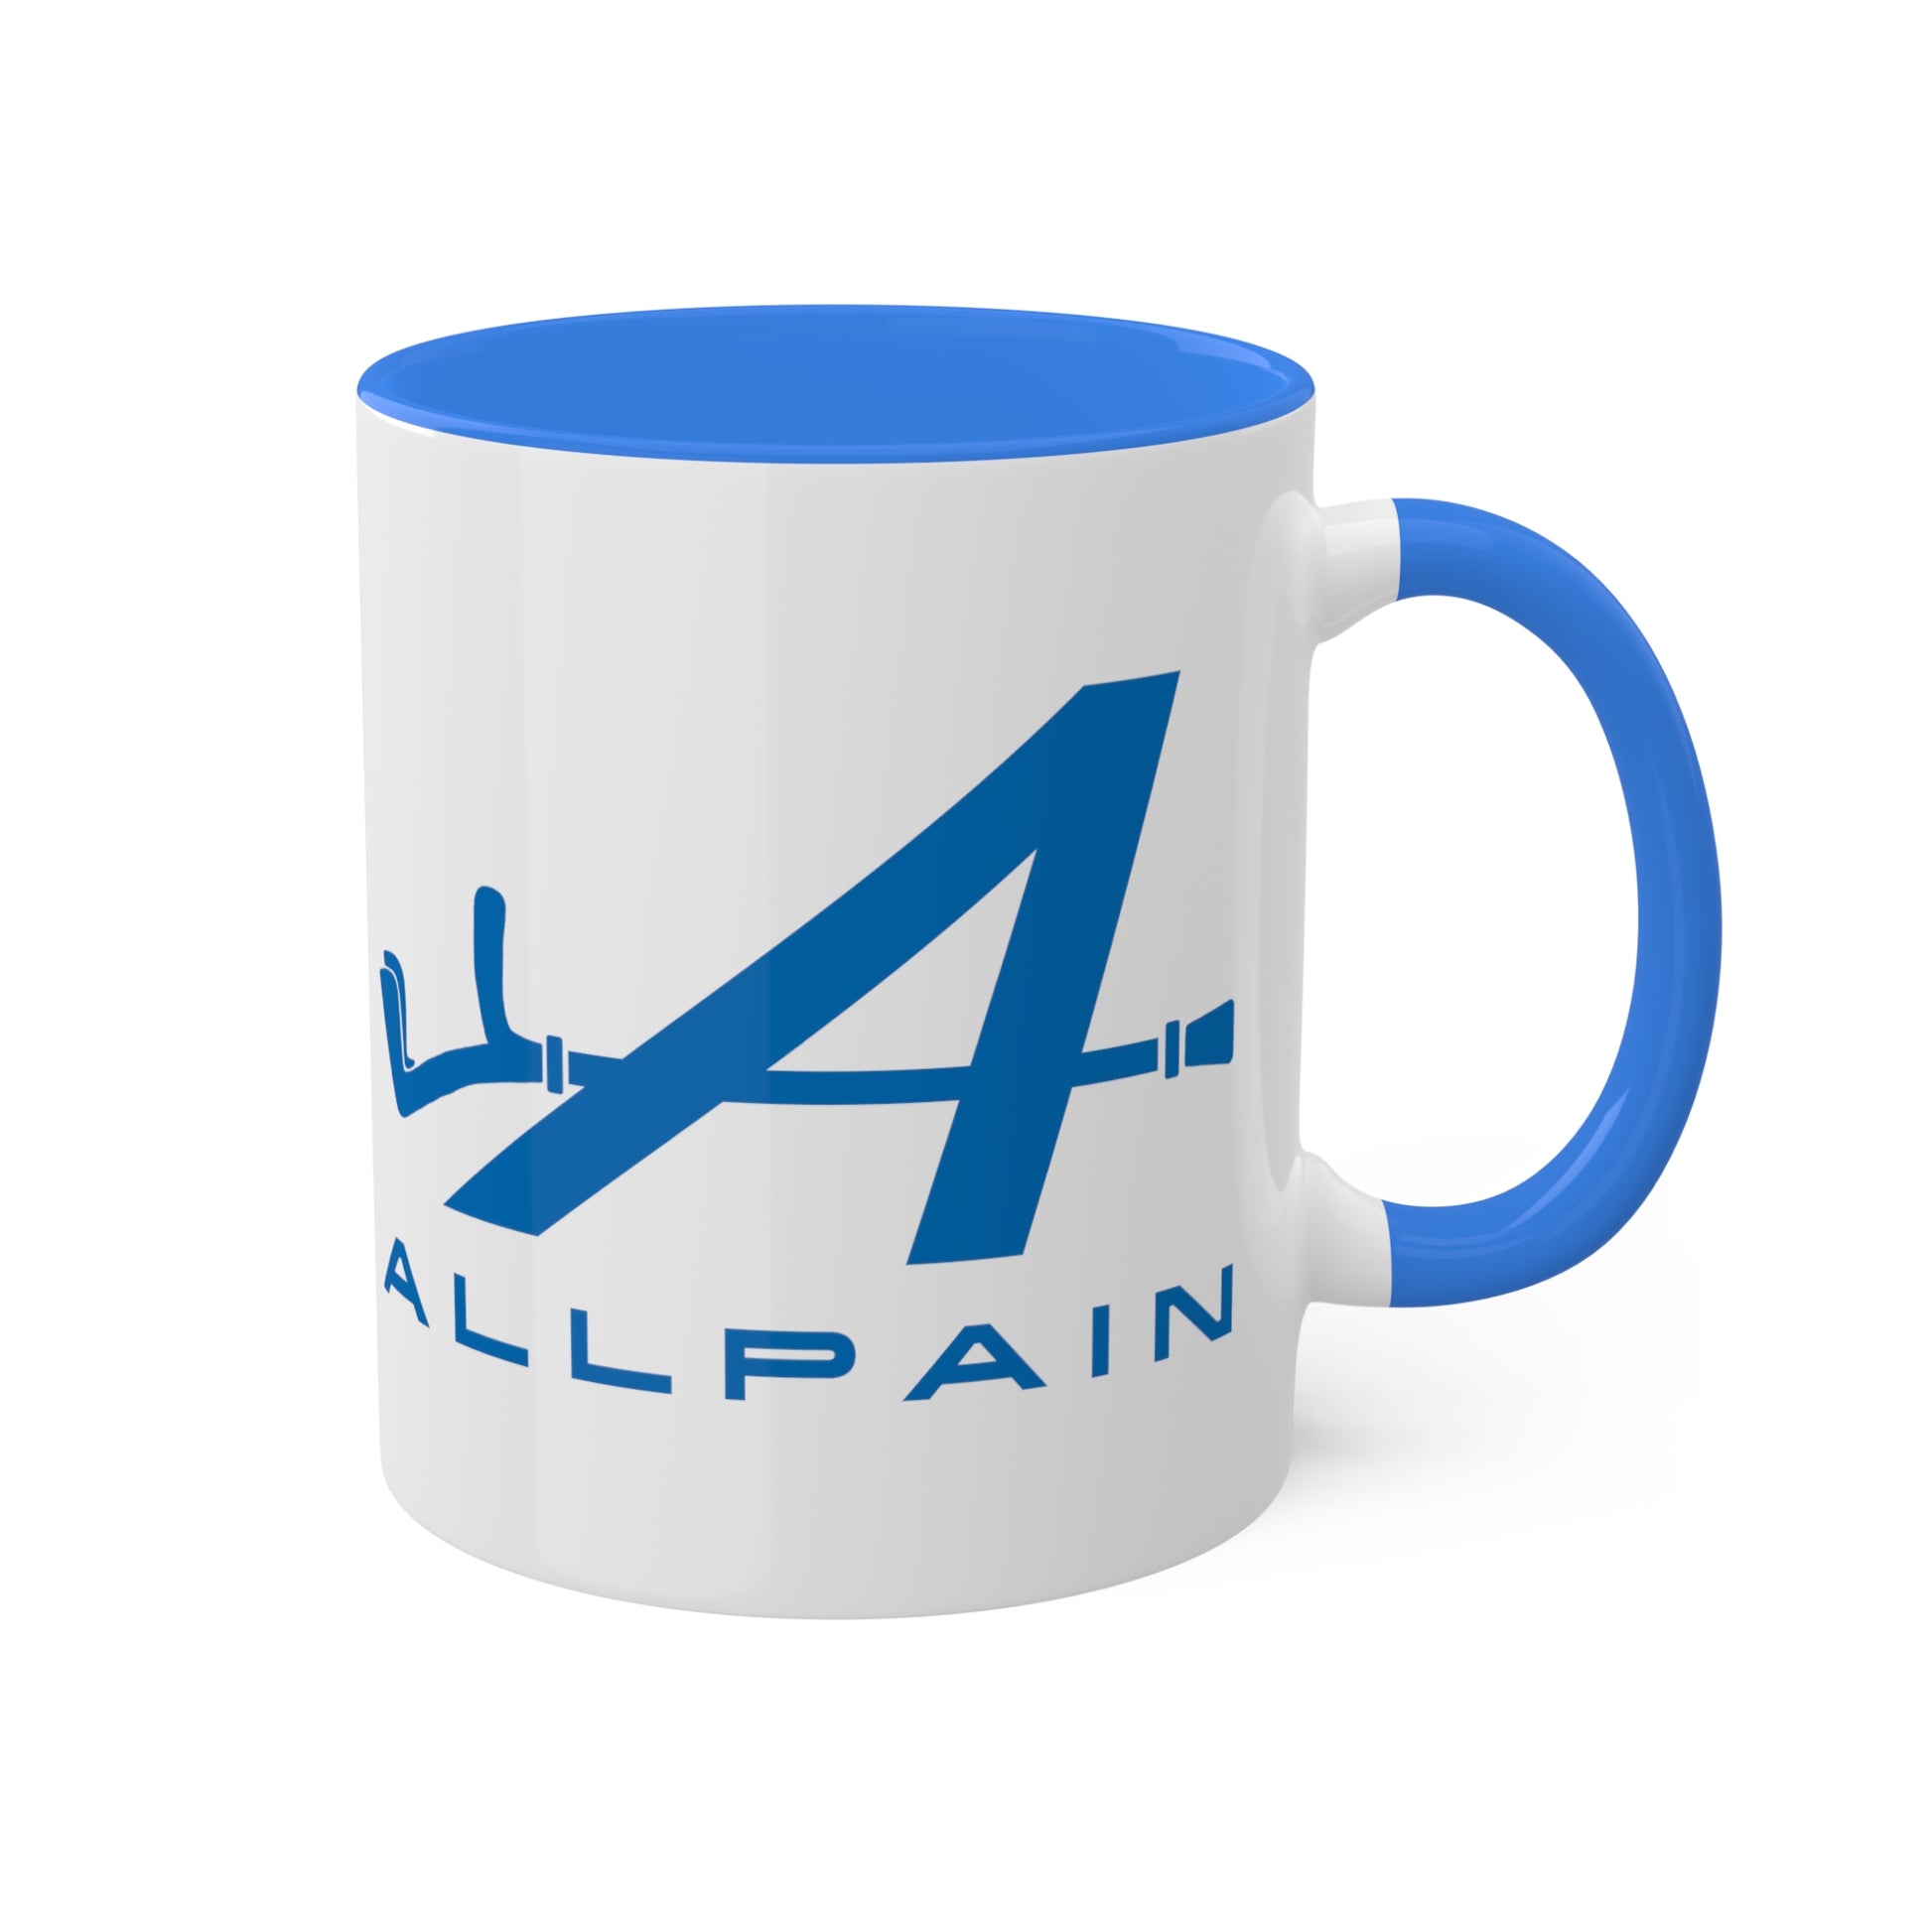 Allpain Alpine F1 Formula 1 Pierre Gasly Esteban Ocon Colorful Mug, 11oz Next Cult Brand Alpine, F1